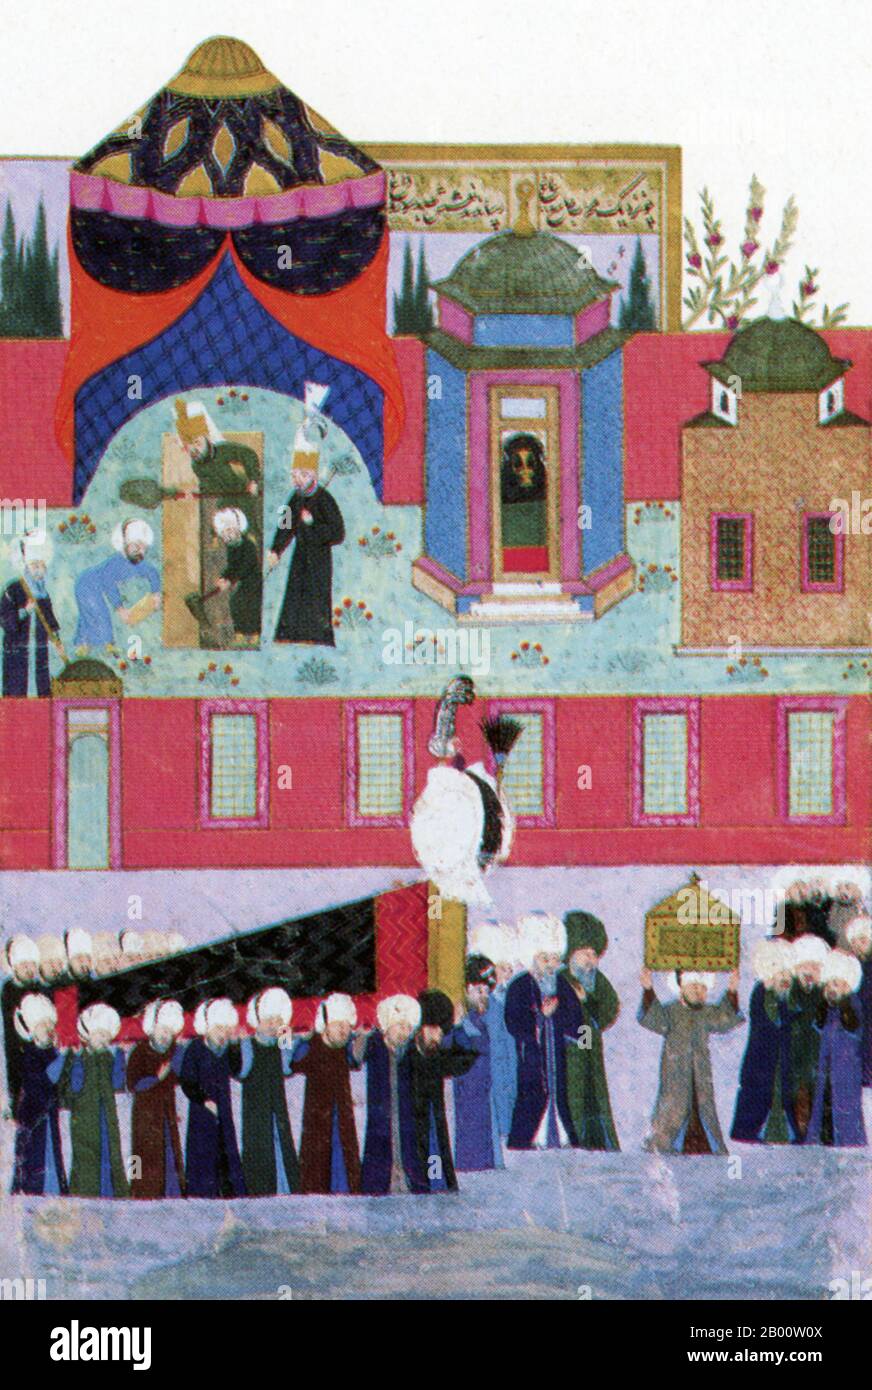 Turchia: 'Sepoltura del sultano Suleyman', un dipinto del 1579-80 dal manoscritto 'Tarih-i Sultan Suleyman' di Seyyid Lokman (1569-1596), che mostra la bara di Suleyman che viene portata nella sua tomba dietro la moschea di Suleyman. Il Sultano Suleyman i (1494-1566), conosciuto anche come 'Suleyman il magnifico' e 'Suleyman il legislatore', fu il decimo e più lungo sultano regnante dell'impero Ottomano. Condusse personalmente i suoi eserciti a conquistare la Transilvania, il Caspio, gran parte del Medio Oriente e il Maghreb. Ha introdotto riforme radicali nella legislazione turca, nell'istruzione, nella fiscalità e nel diritto penale. Foto Stock